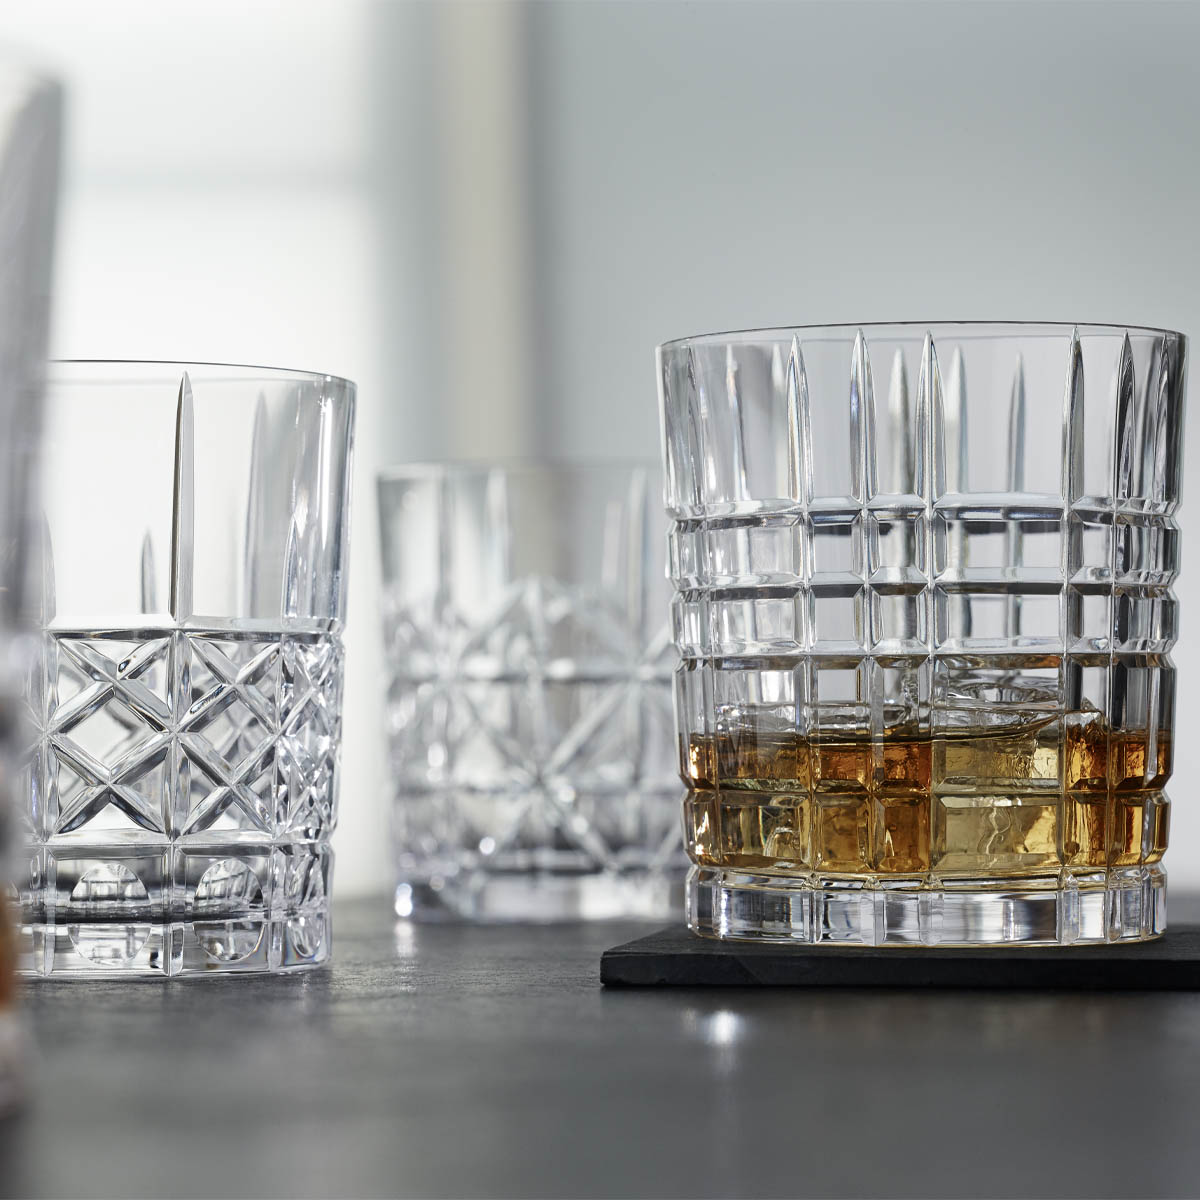 Набор стаканов для виски Nachtmann Highland 345мл, 4шт набор стаканов для виски samurai 240мл 6 шт crystal bohemia 990 23510 0 22615 240 609